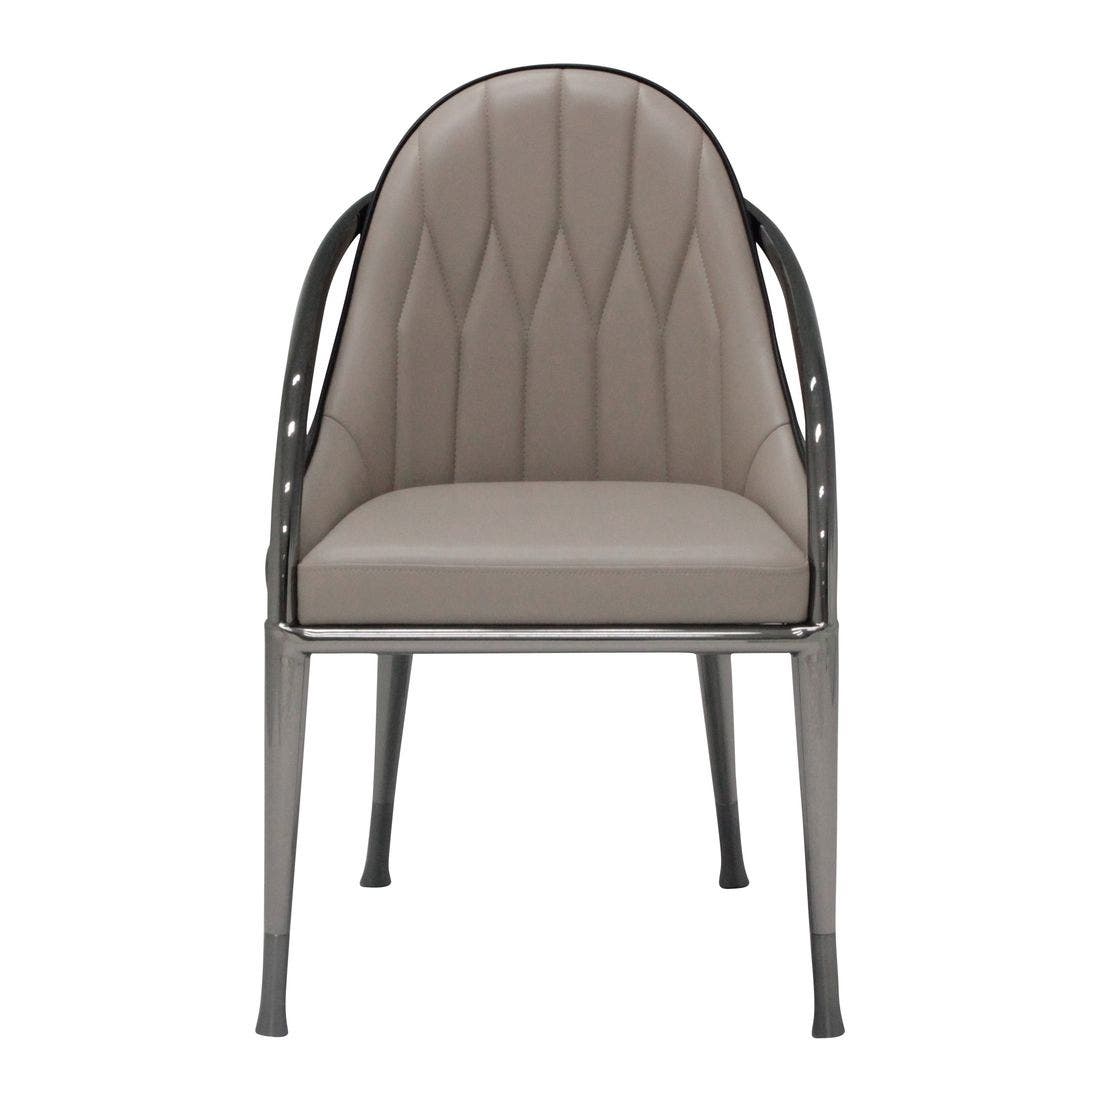 เก้าอี้ทานอาหาร เก้าอี้เหล็กเบาะหนัง รุ่น Winla สีสีน้ำตาล-SB Design Square